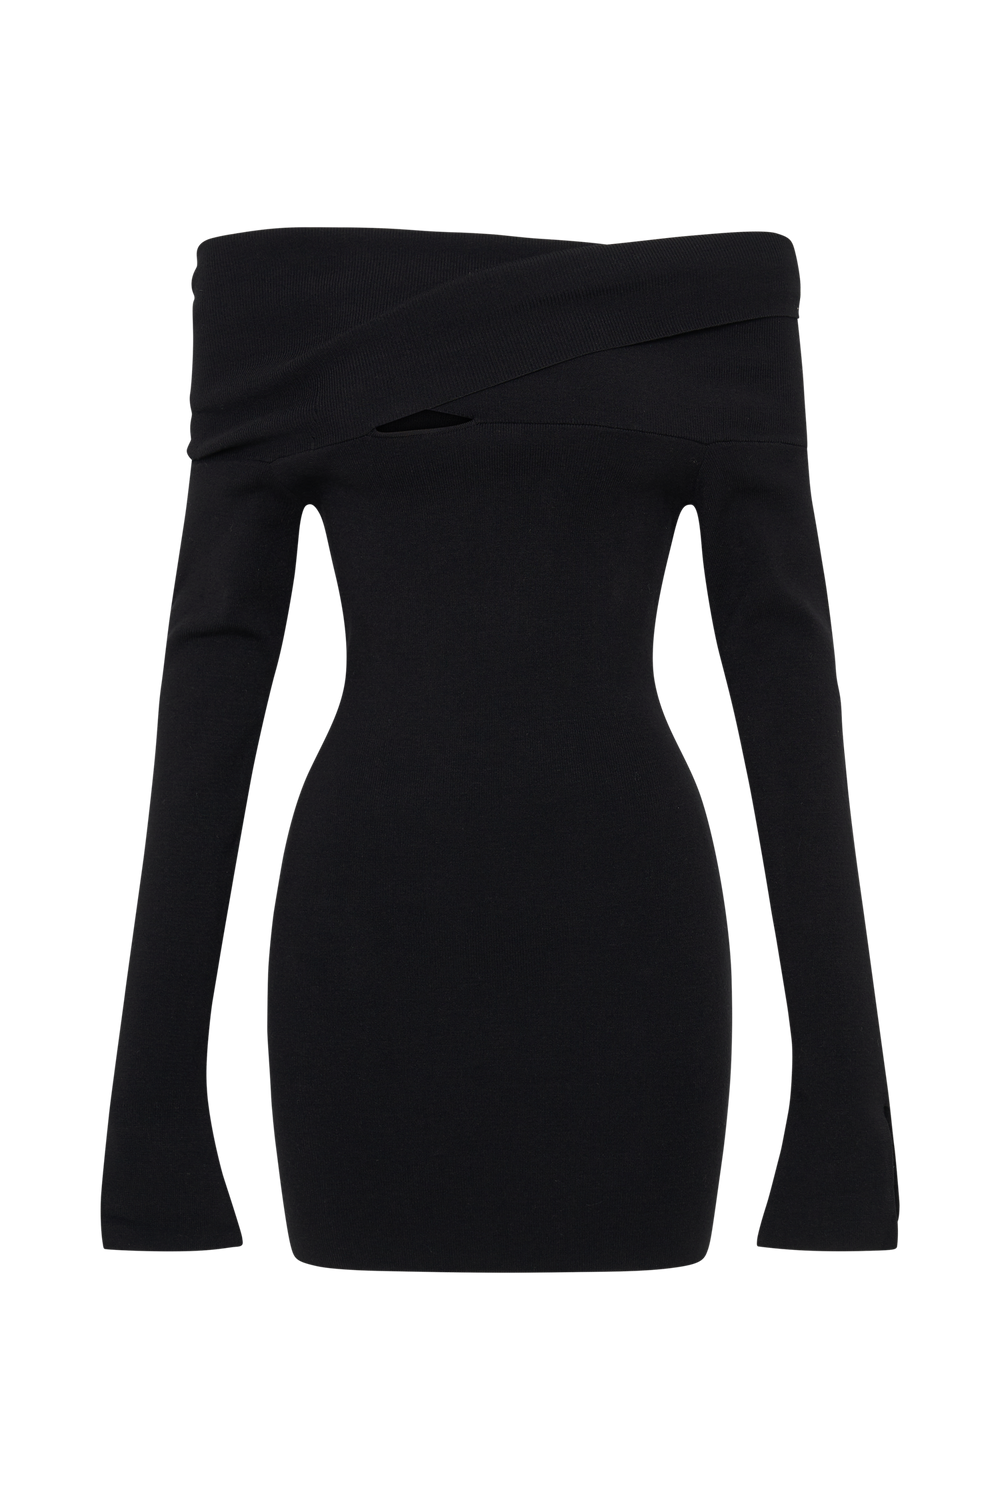 Clover Off Shoulder Knit Mini Dress - Black